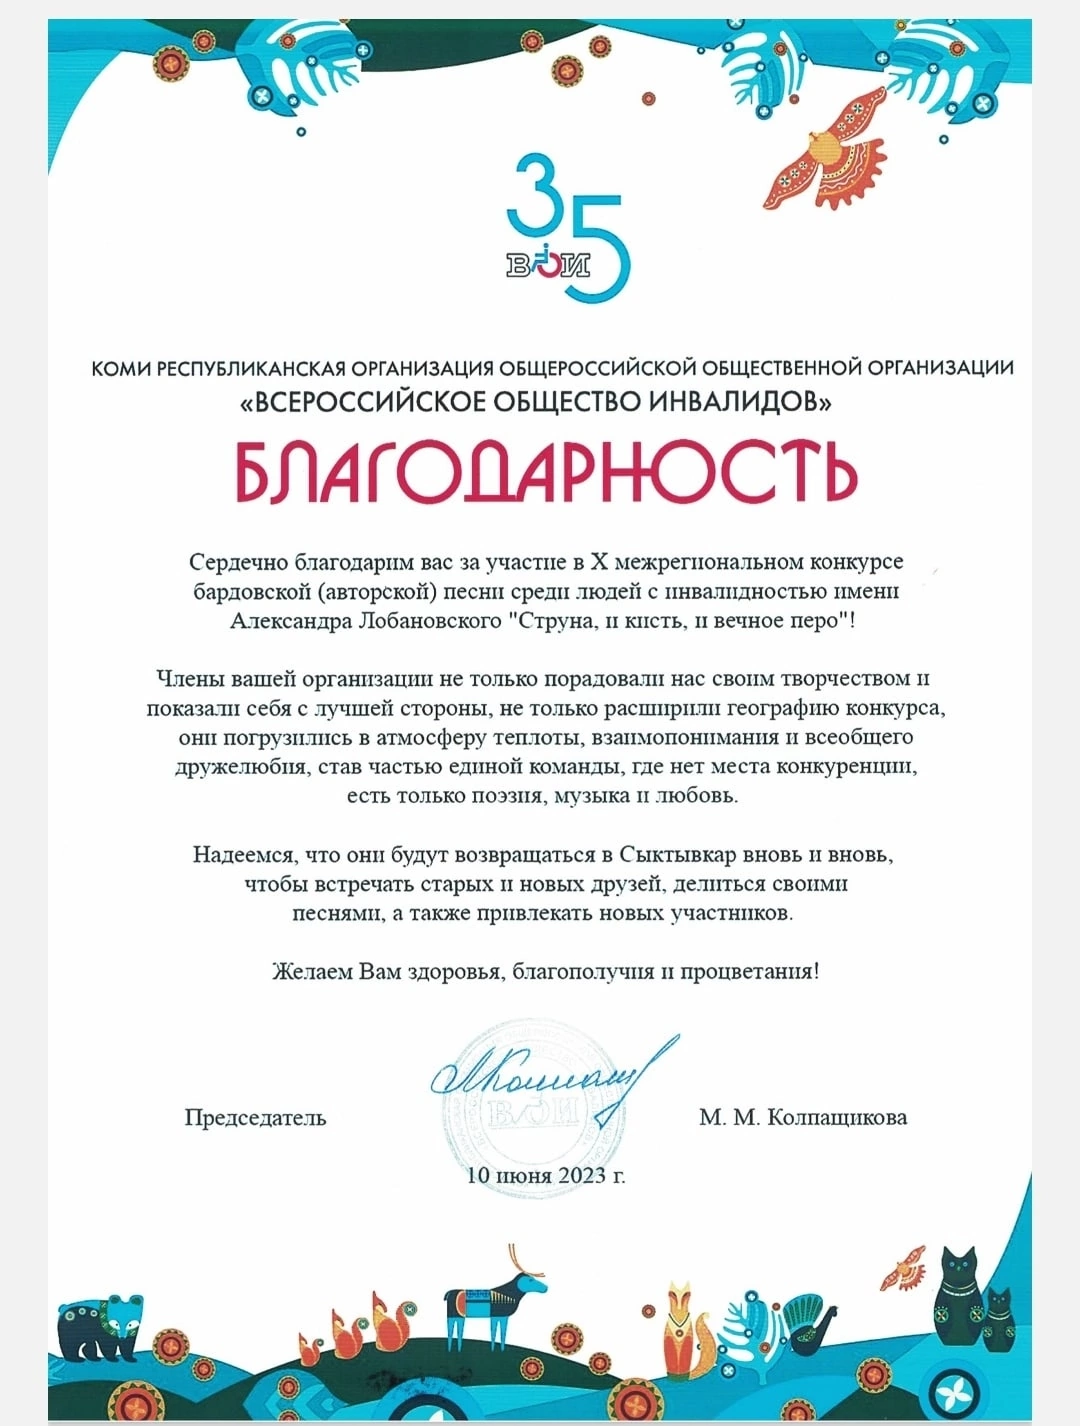 В июне в Сыктывкаре состоялся традиционный межрегиональный конкурс «Струна, и кисть, и вечное перо».